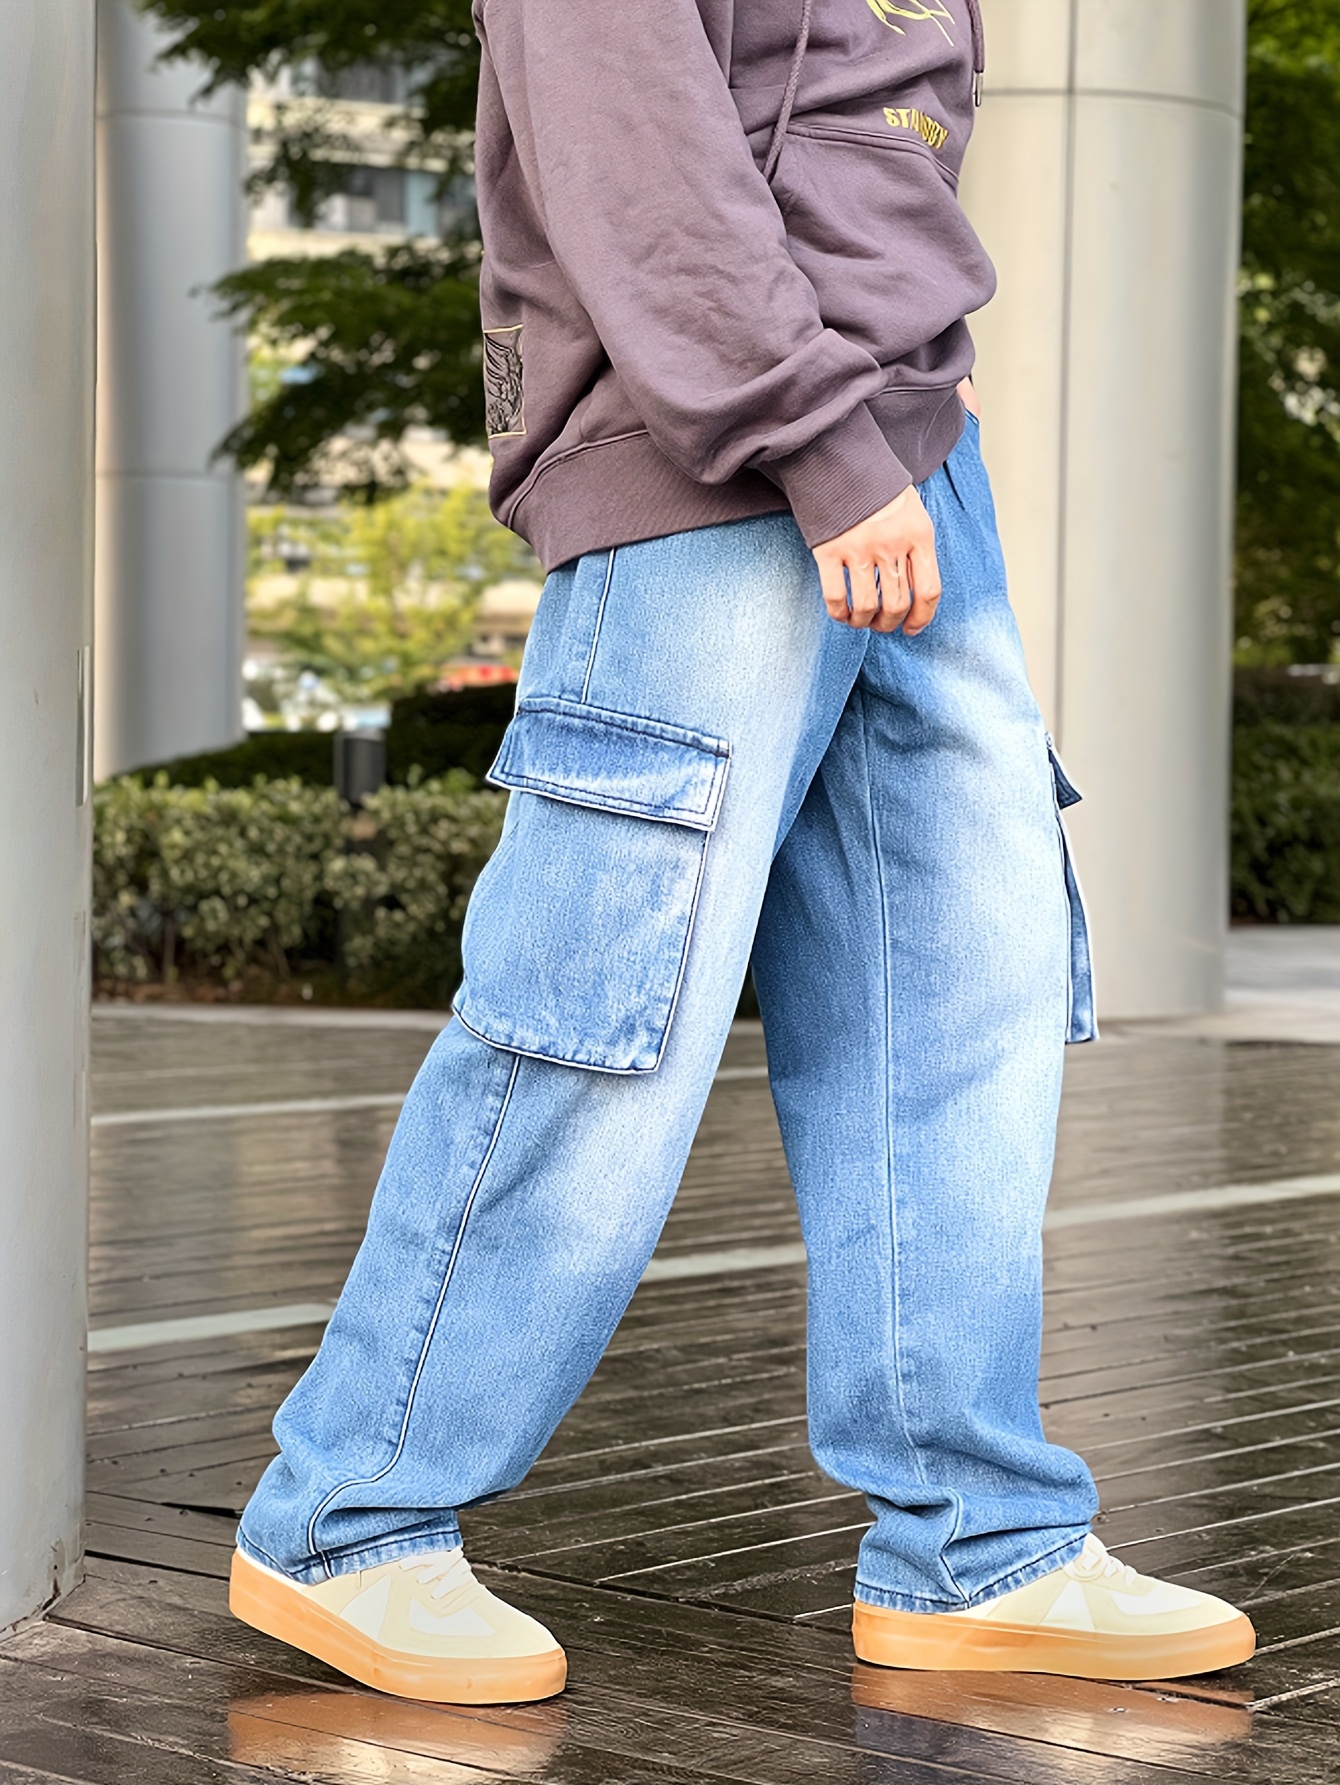 Jeans & Denim for Men, Cool Jeans for Men